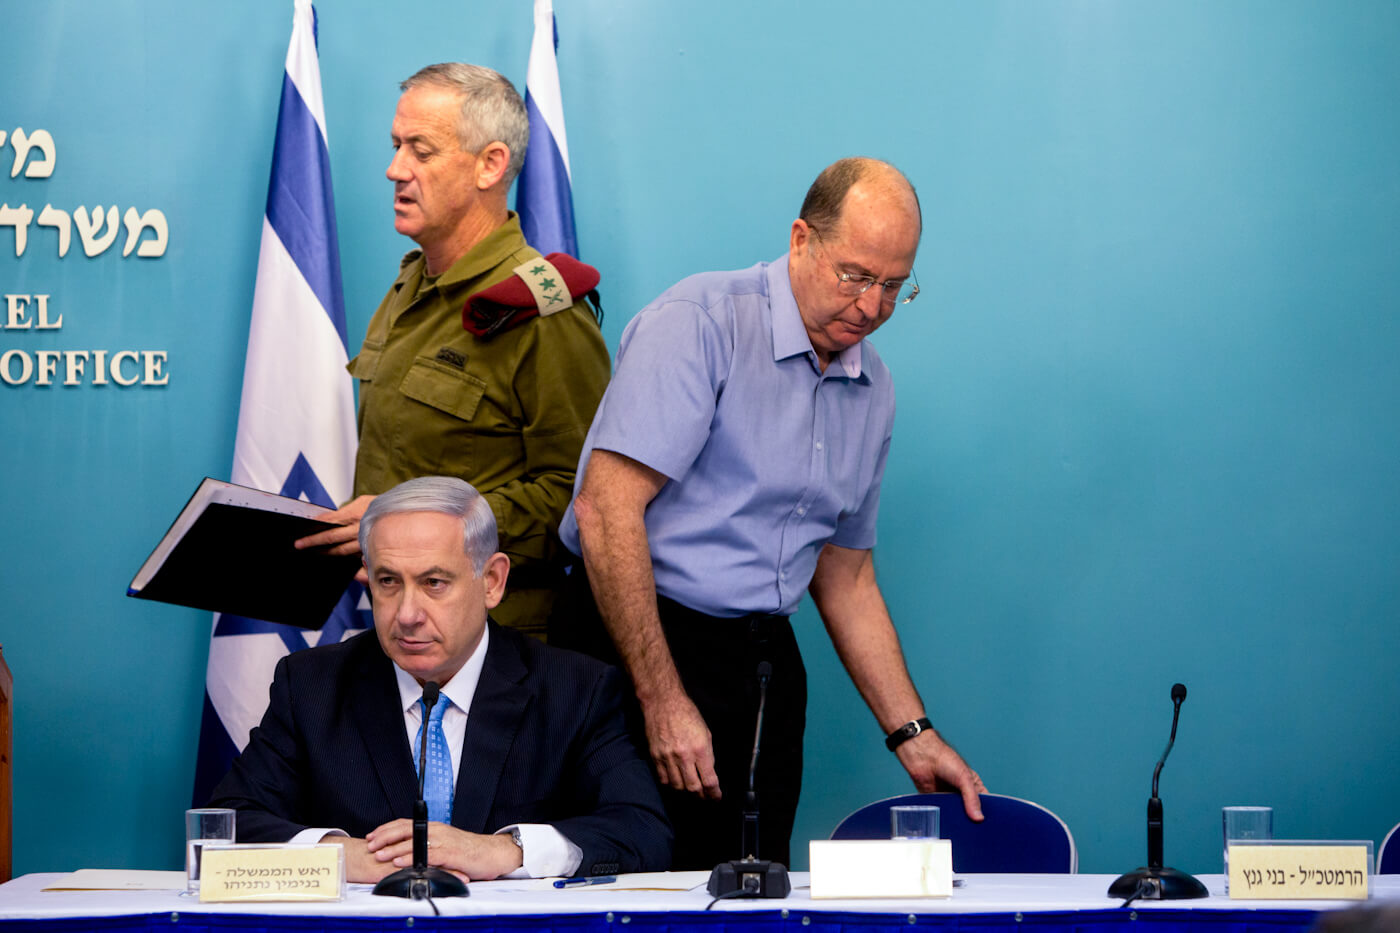 Benjamin Netanyahu | Benny Gantz